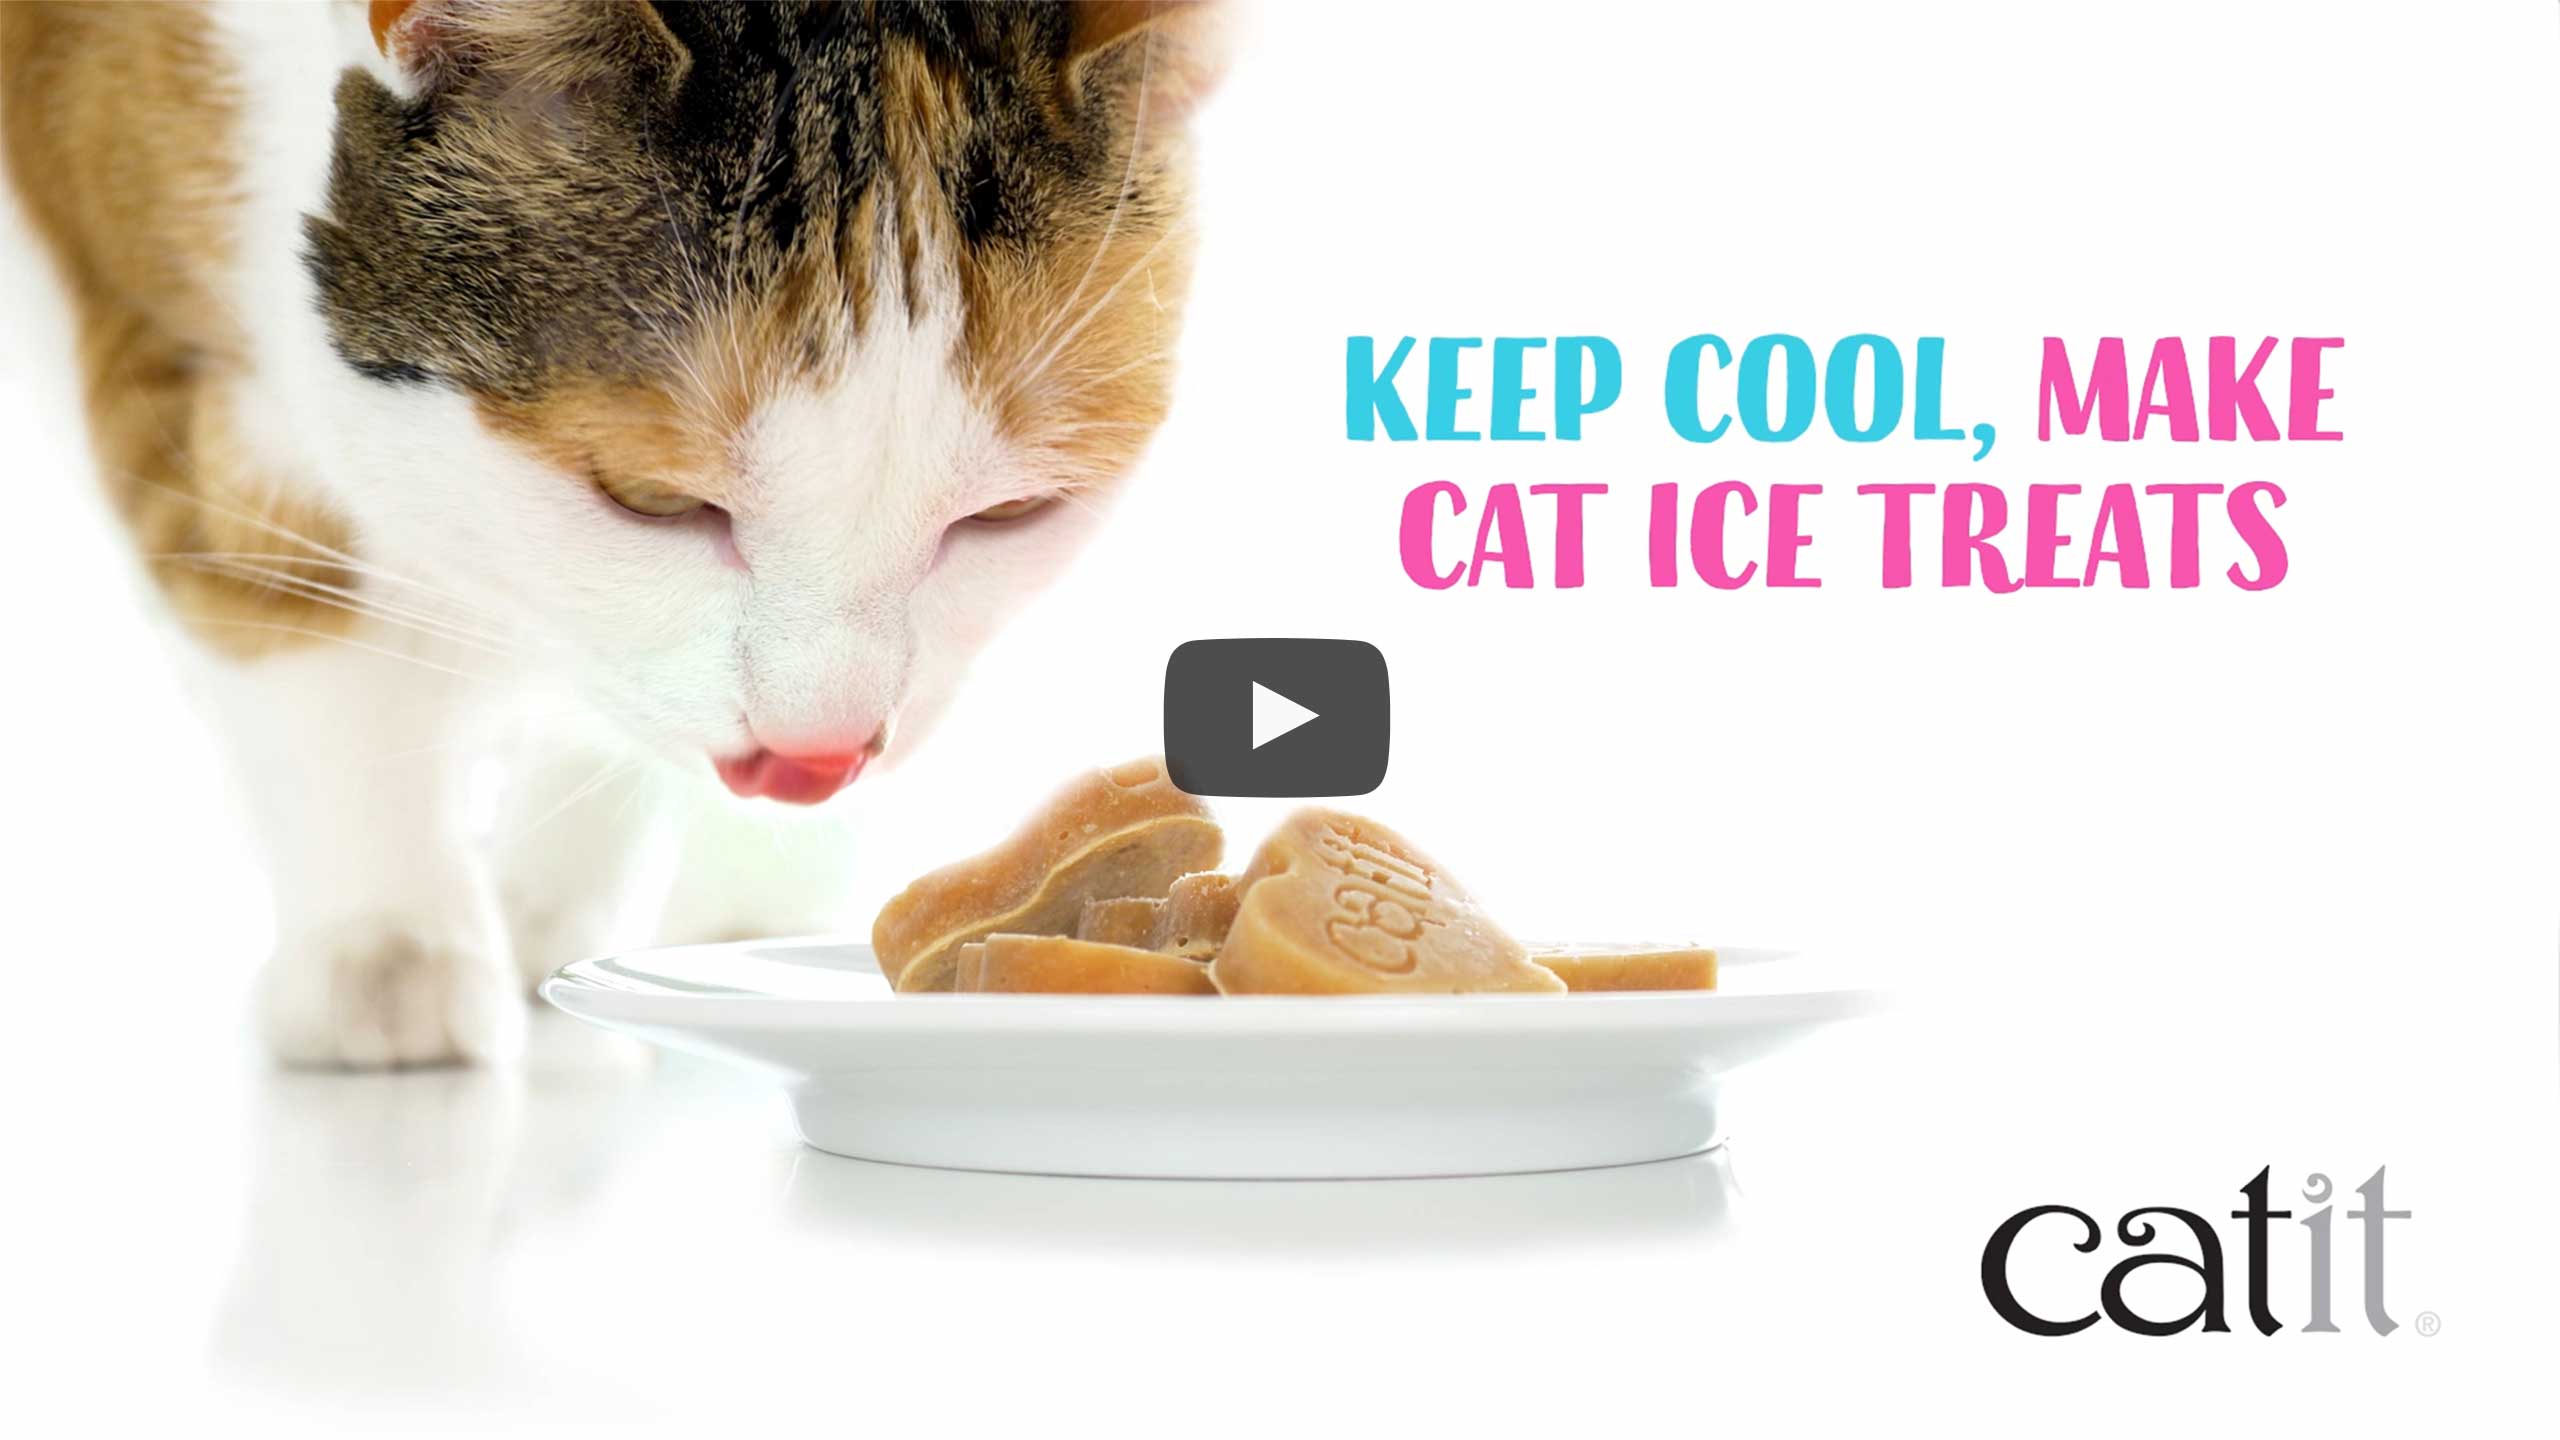 Zrób pyszne, zdrowe i nawadniające lodowe przysmaki dla kotów na naszej silikonowej tacce do lodu w kształcie serca.